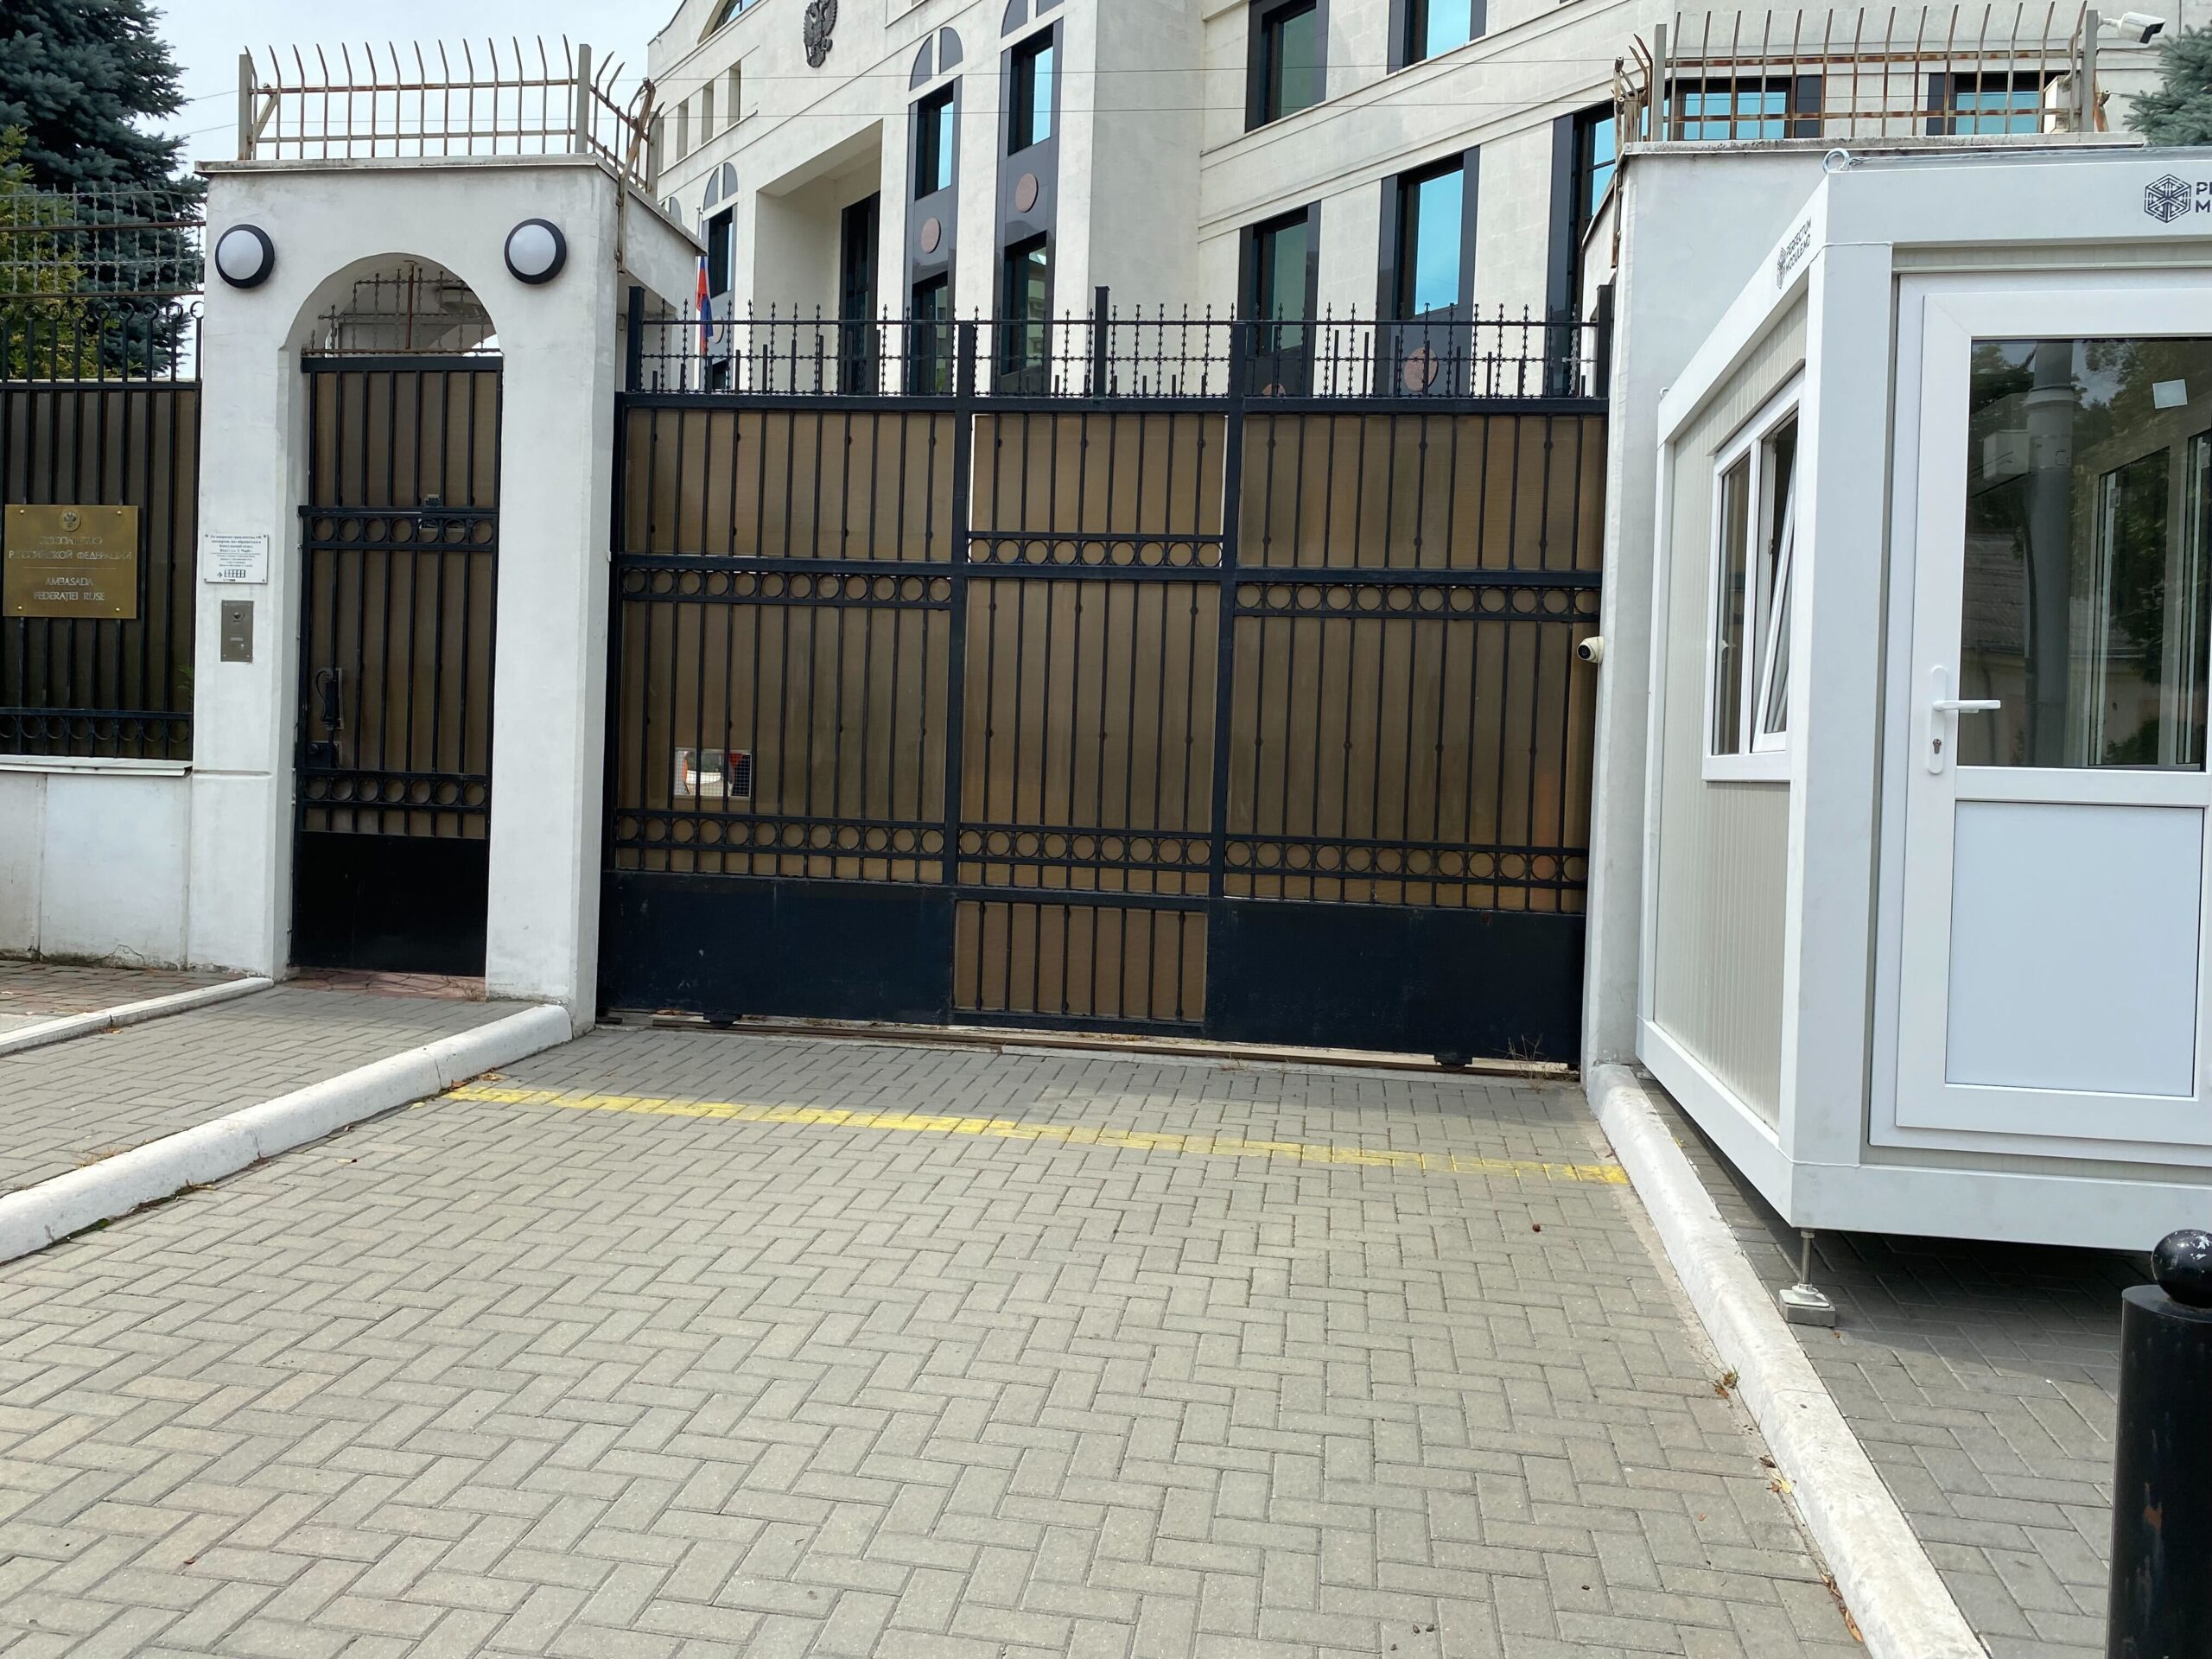 Mercedes врезался в ворота посольства России в Кишиневе. Водитель пытался скрыться от полиции